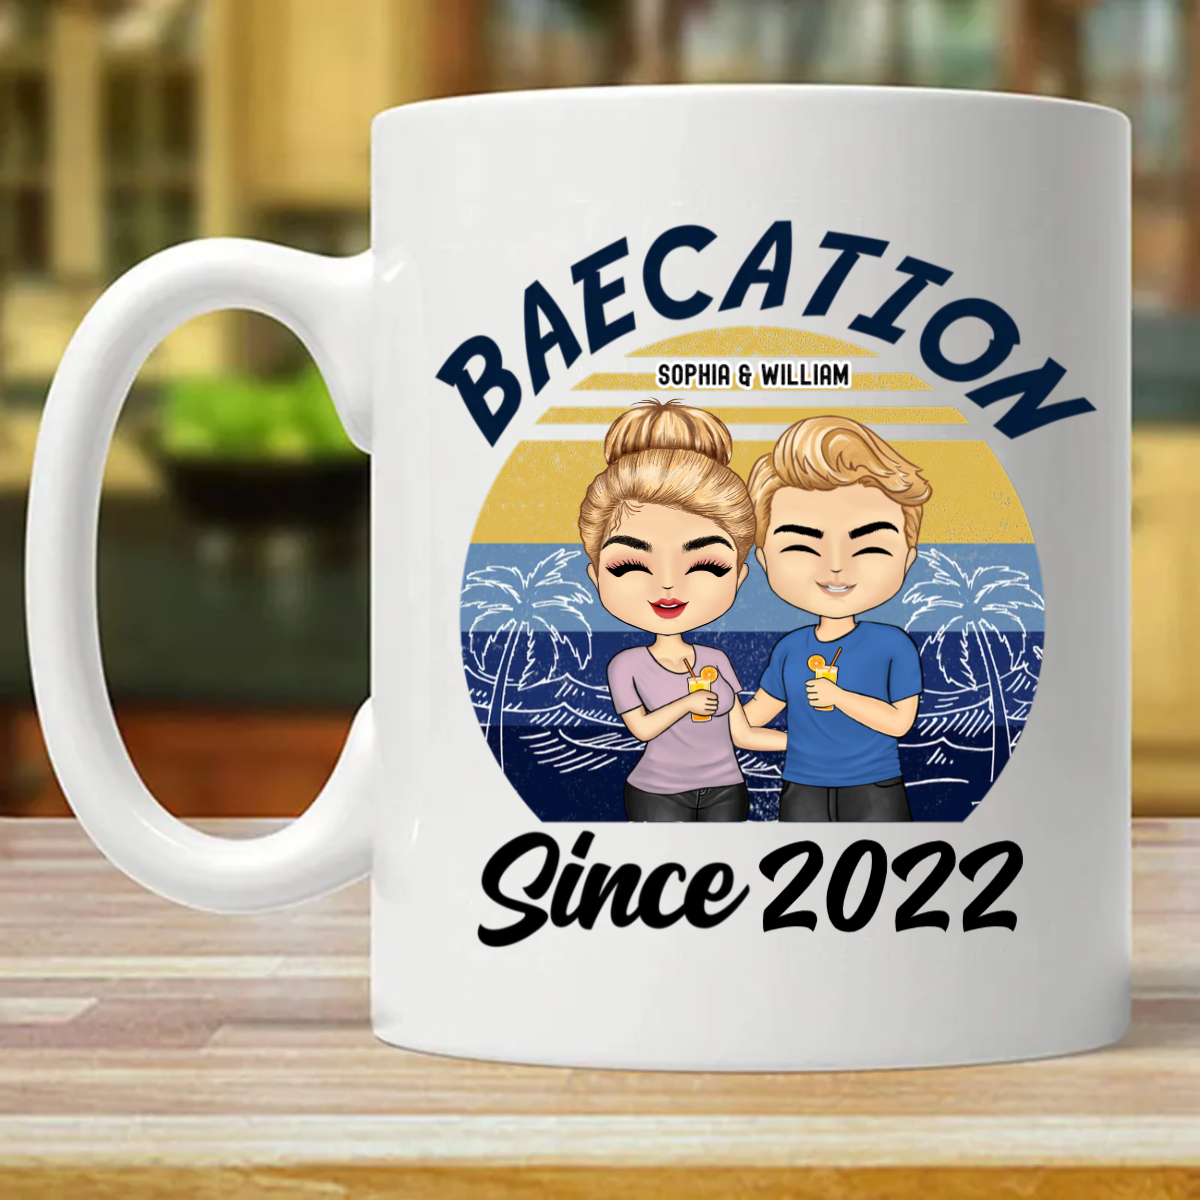 Baecation - ビーチ カップルへのギフト - パーソナライズされたカスタム マグカップ (両面印刷)